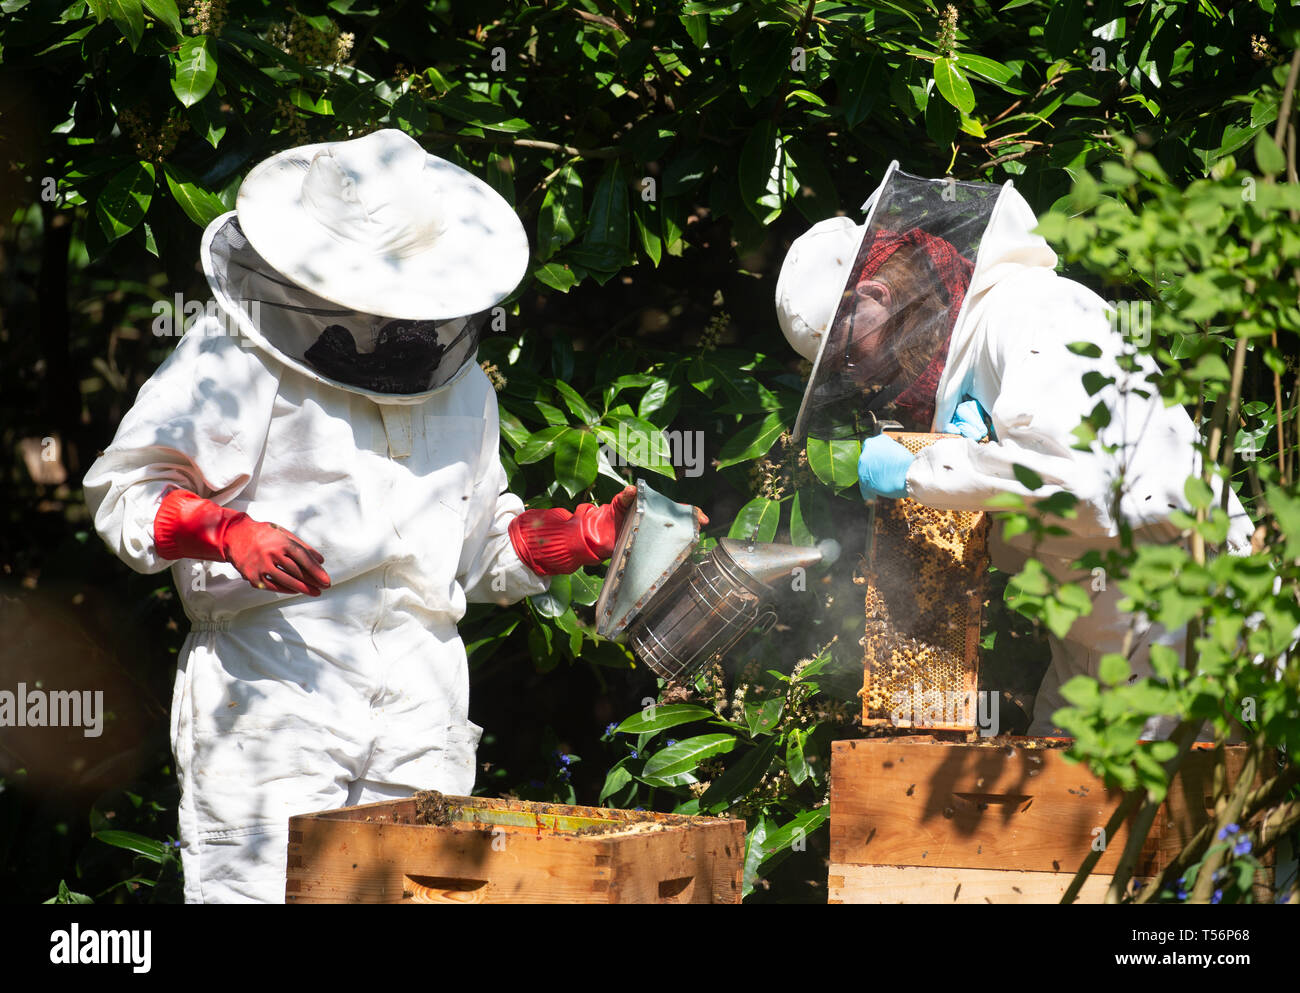 Imker neigen dazu, ihre Bienenstöcke in Suffolk, England. Sie Rauch leicht sedieren, die Bienen, um sie zu beruhigen. Stockfoto